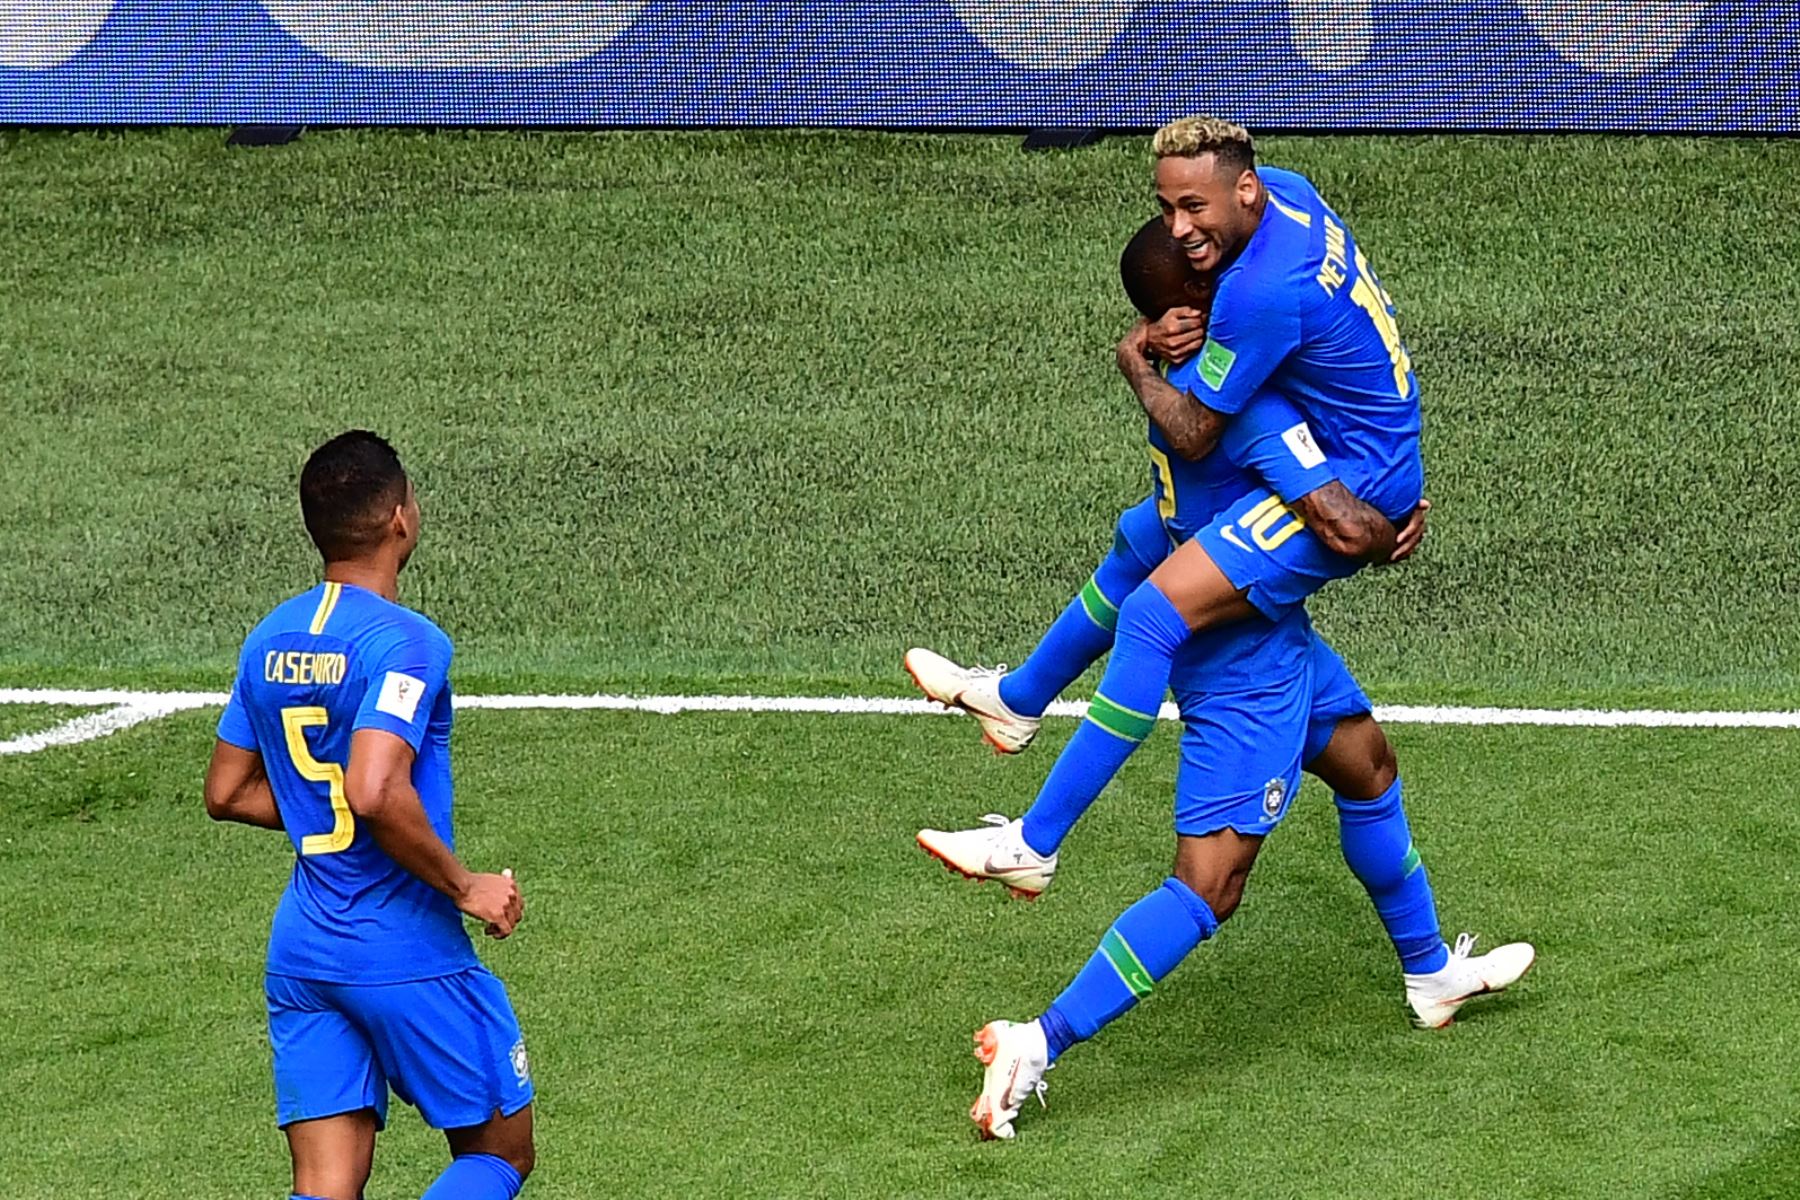 El delantero brasileño Neymar (R) es felicitado por sus compañeros después de anotar el segundo gol durante el partido de fútbol del Grupo E de la Copa Mundial Rusia 2018 entre Brasil y Costa Rica en el Estadio de San Petersburgo el 22 de junio de 2018. / AFP